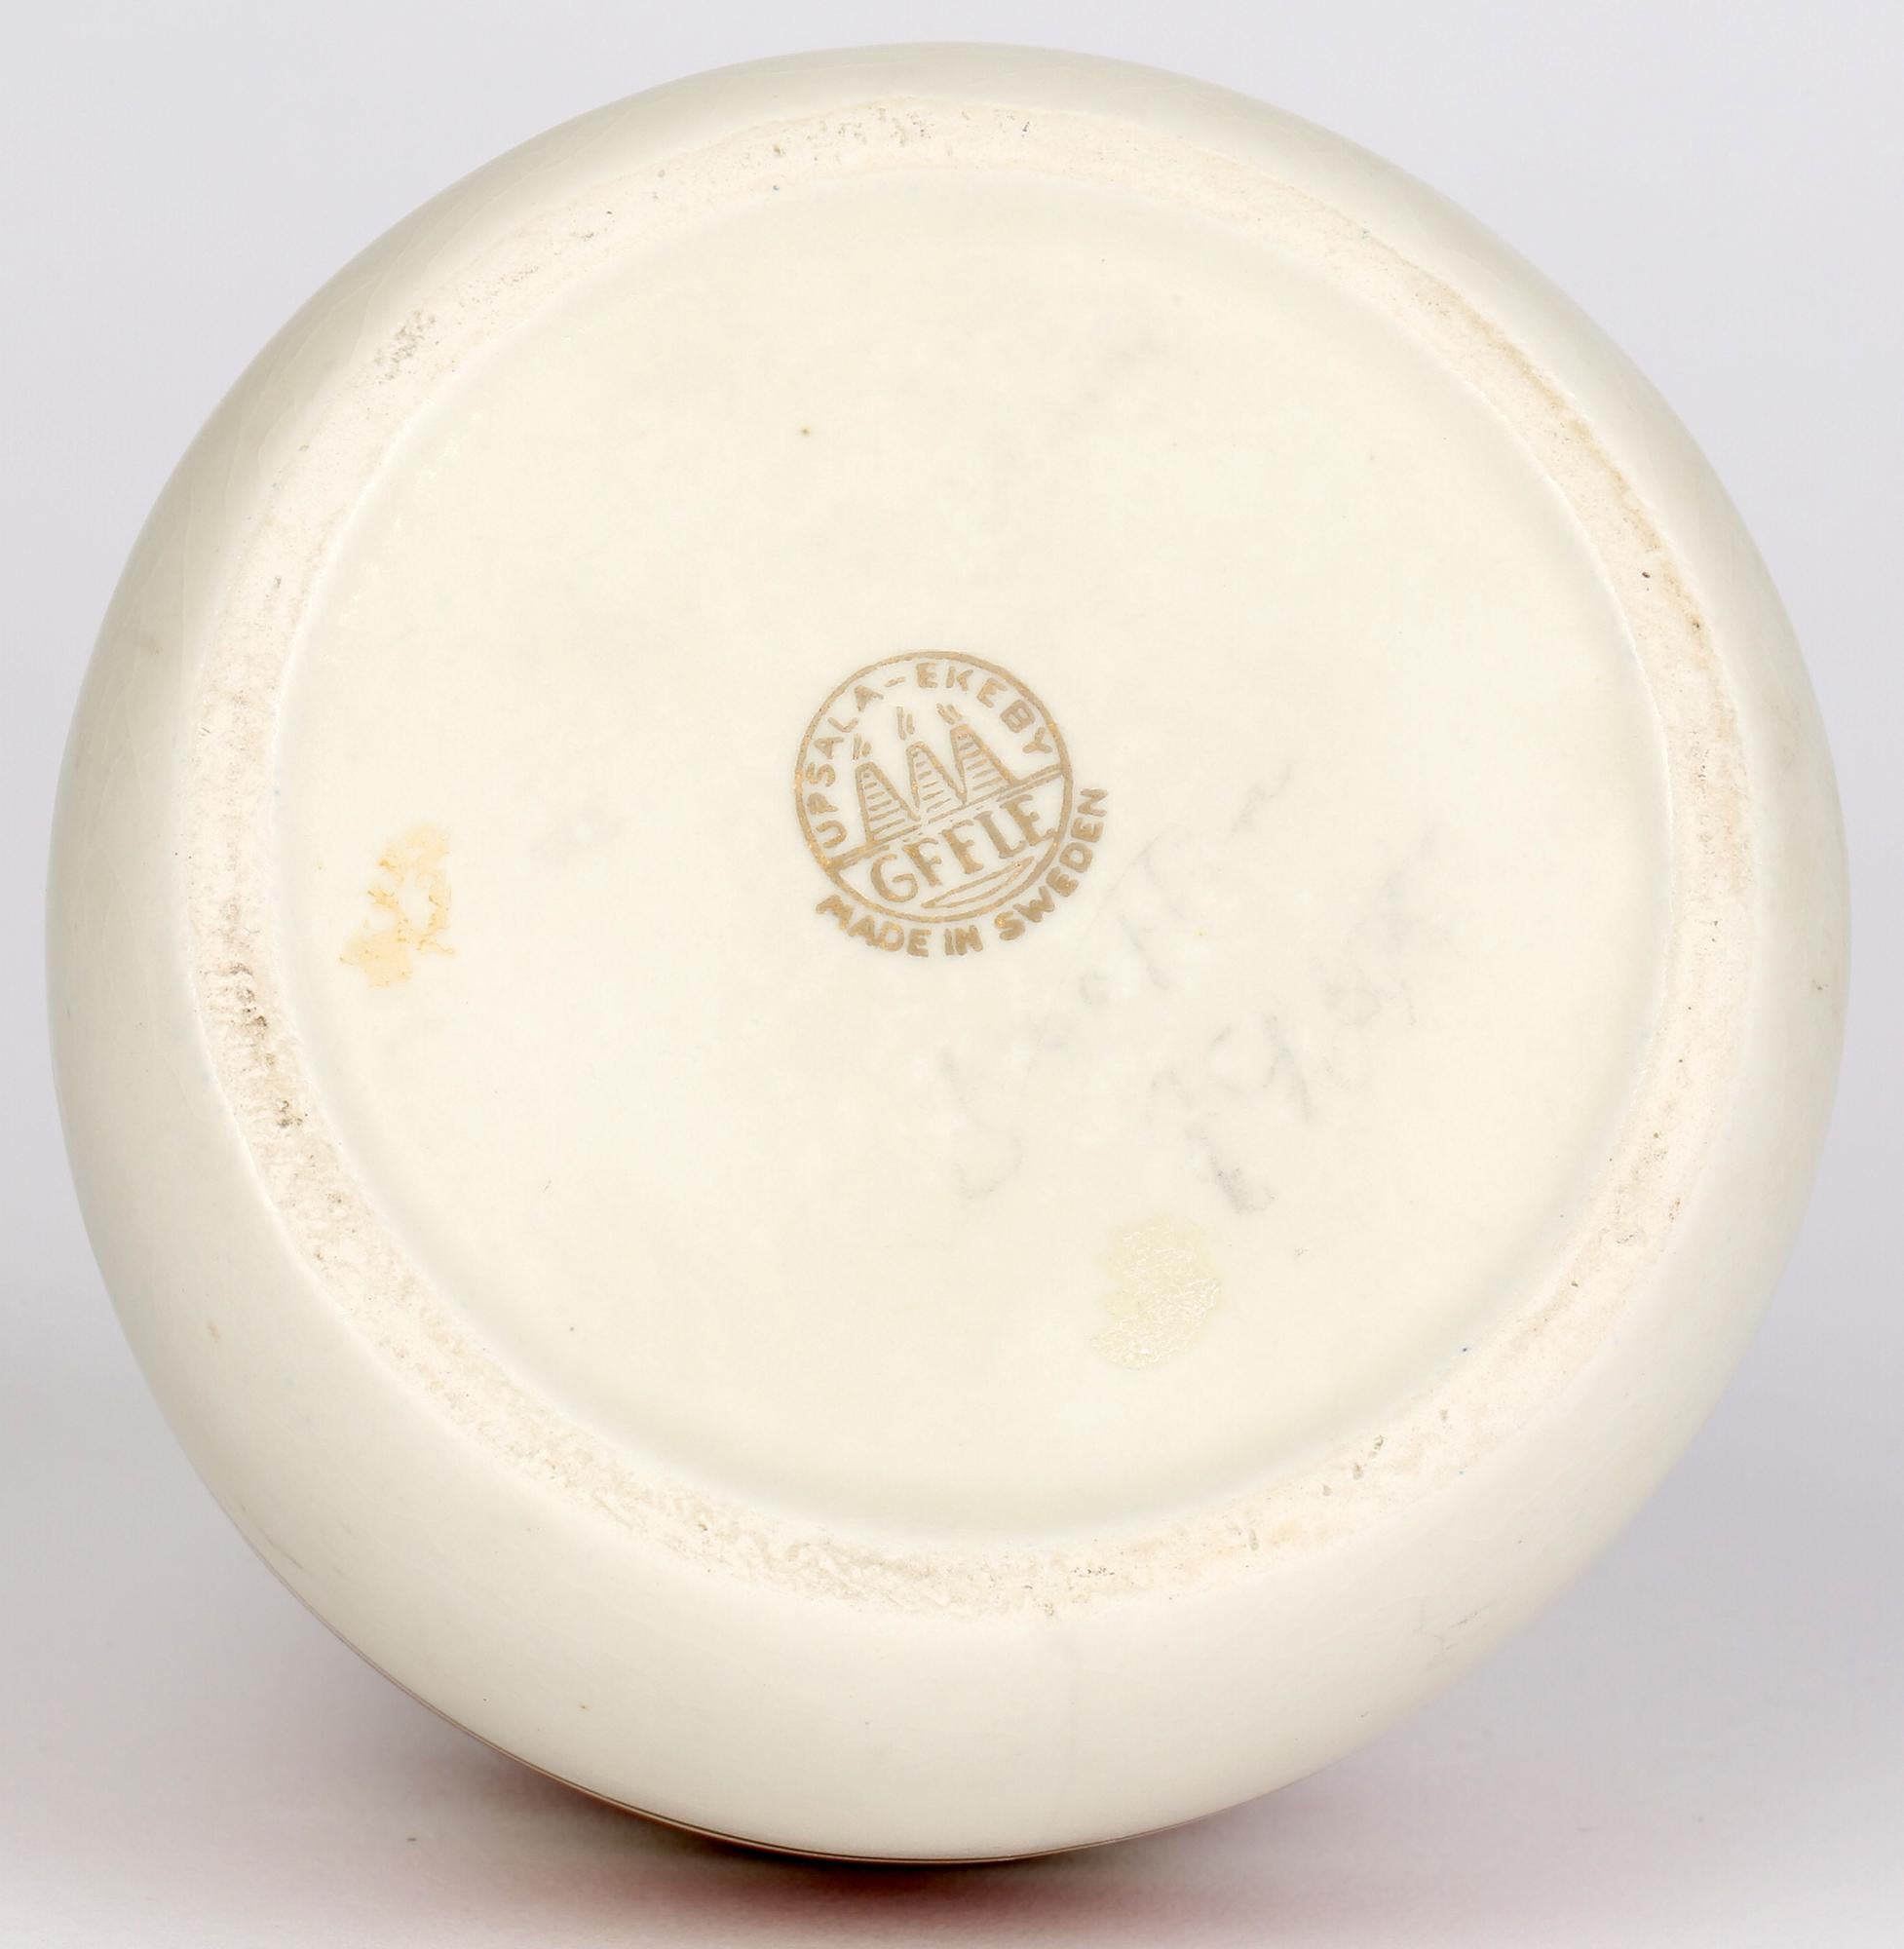 Un vase inhabituel en poterie suédoise Art Déco décoré d'un motif linéaire marqué Upsala-Ekeby Gefle et indistinctement et faiblement signé et daté, probablement 1937. Le vase, légèrement en pot, a une forme simple de dôme arrondi avec un col étroit